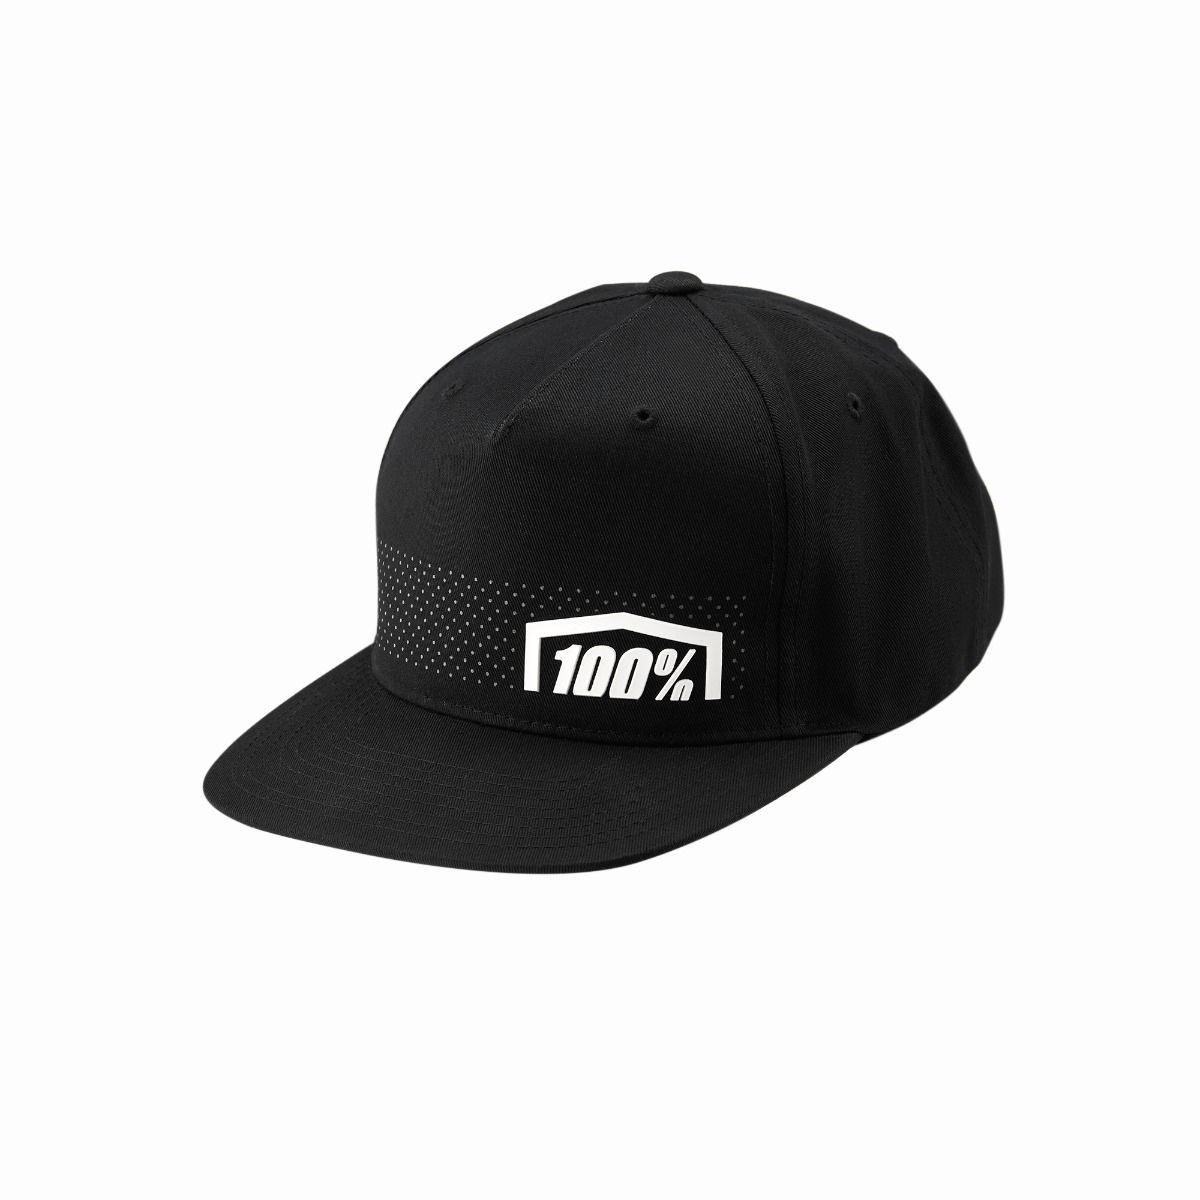 100% Nemesis Youth Snapback Hat product image